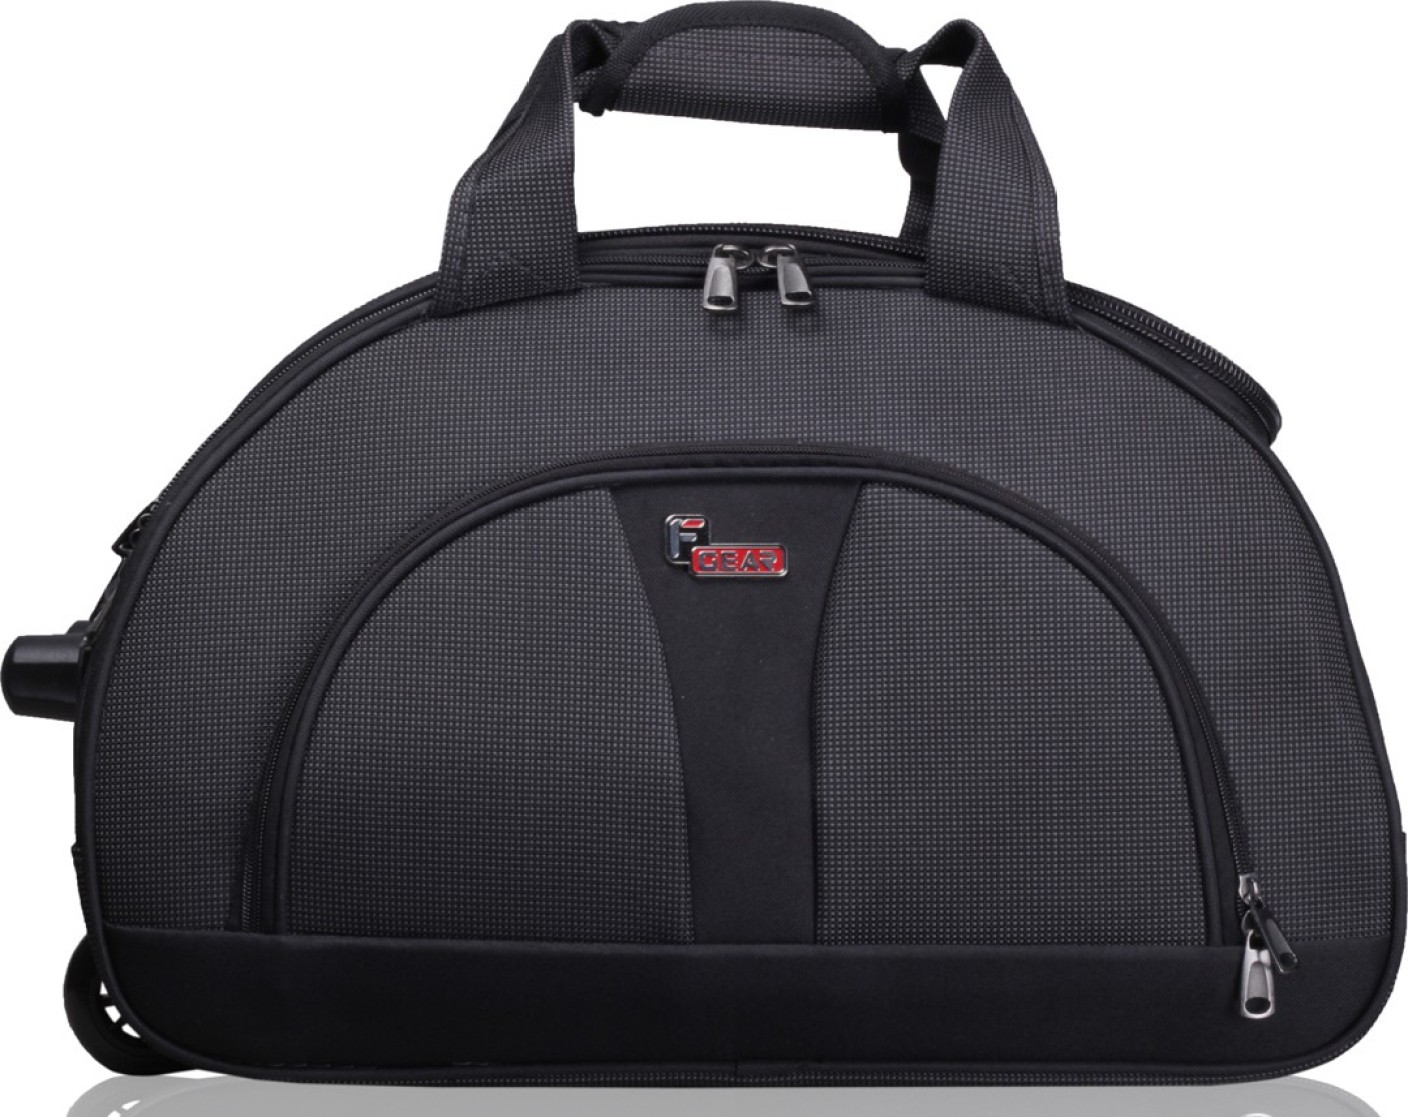 F Gear 2384a 24 inch/60 cm Travel Duffel Bag Grey, Black - Price in India | 0